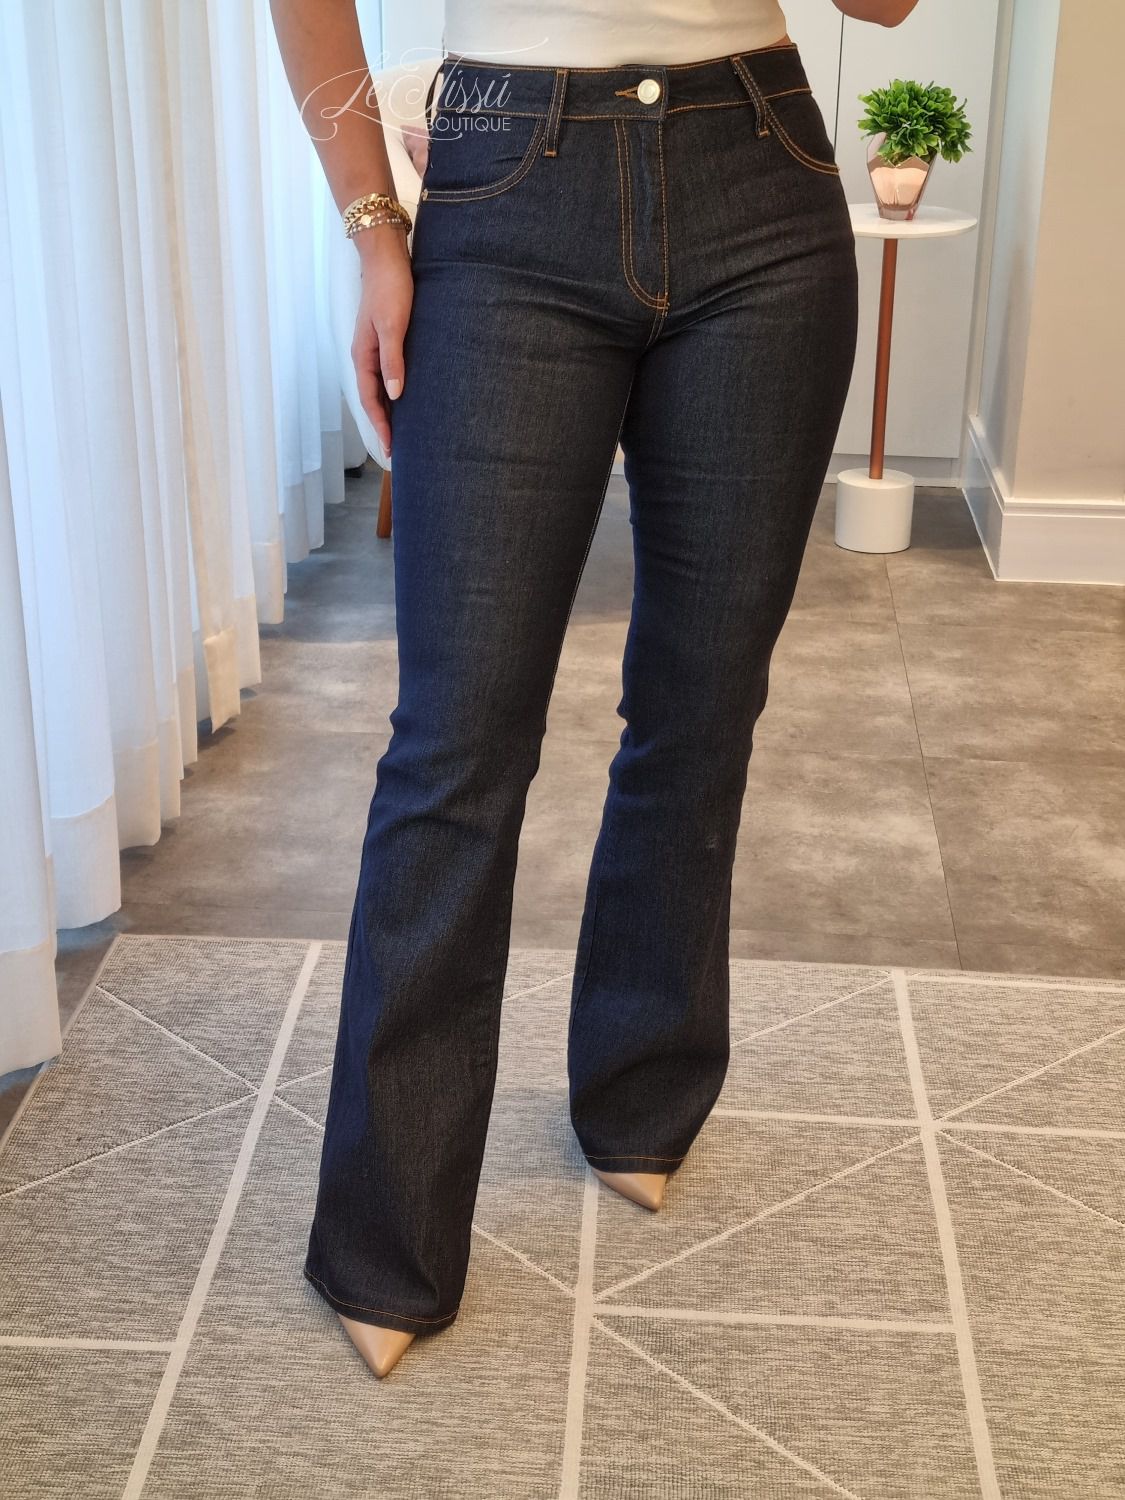 Calça flare jeans escura - LeTissú Boutique de Roupas Femininas